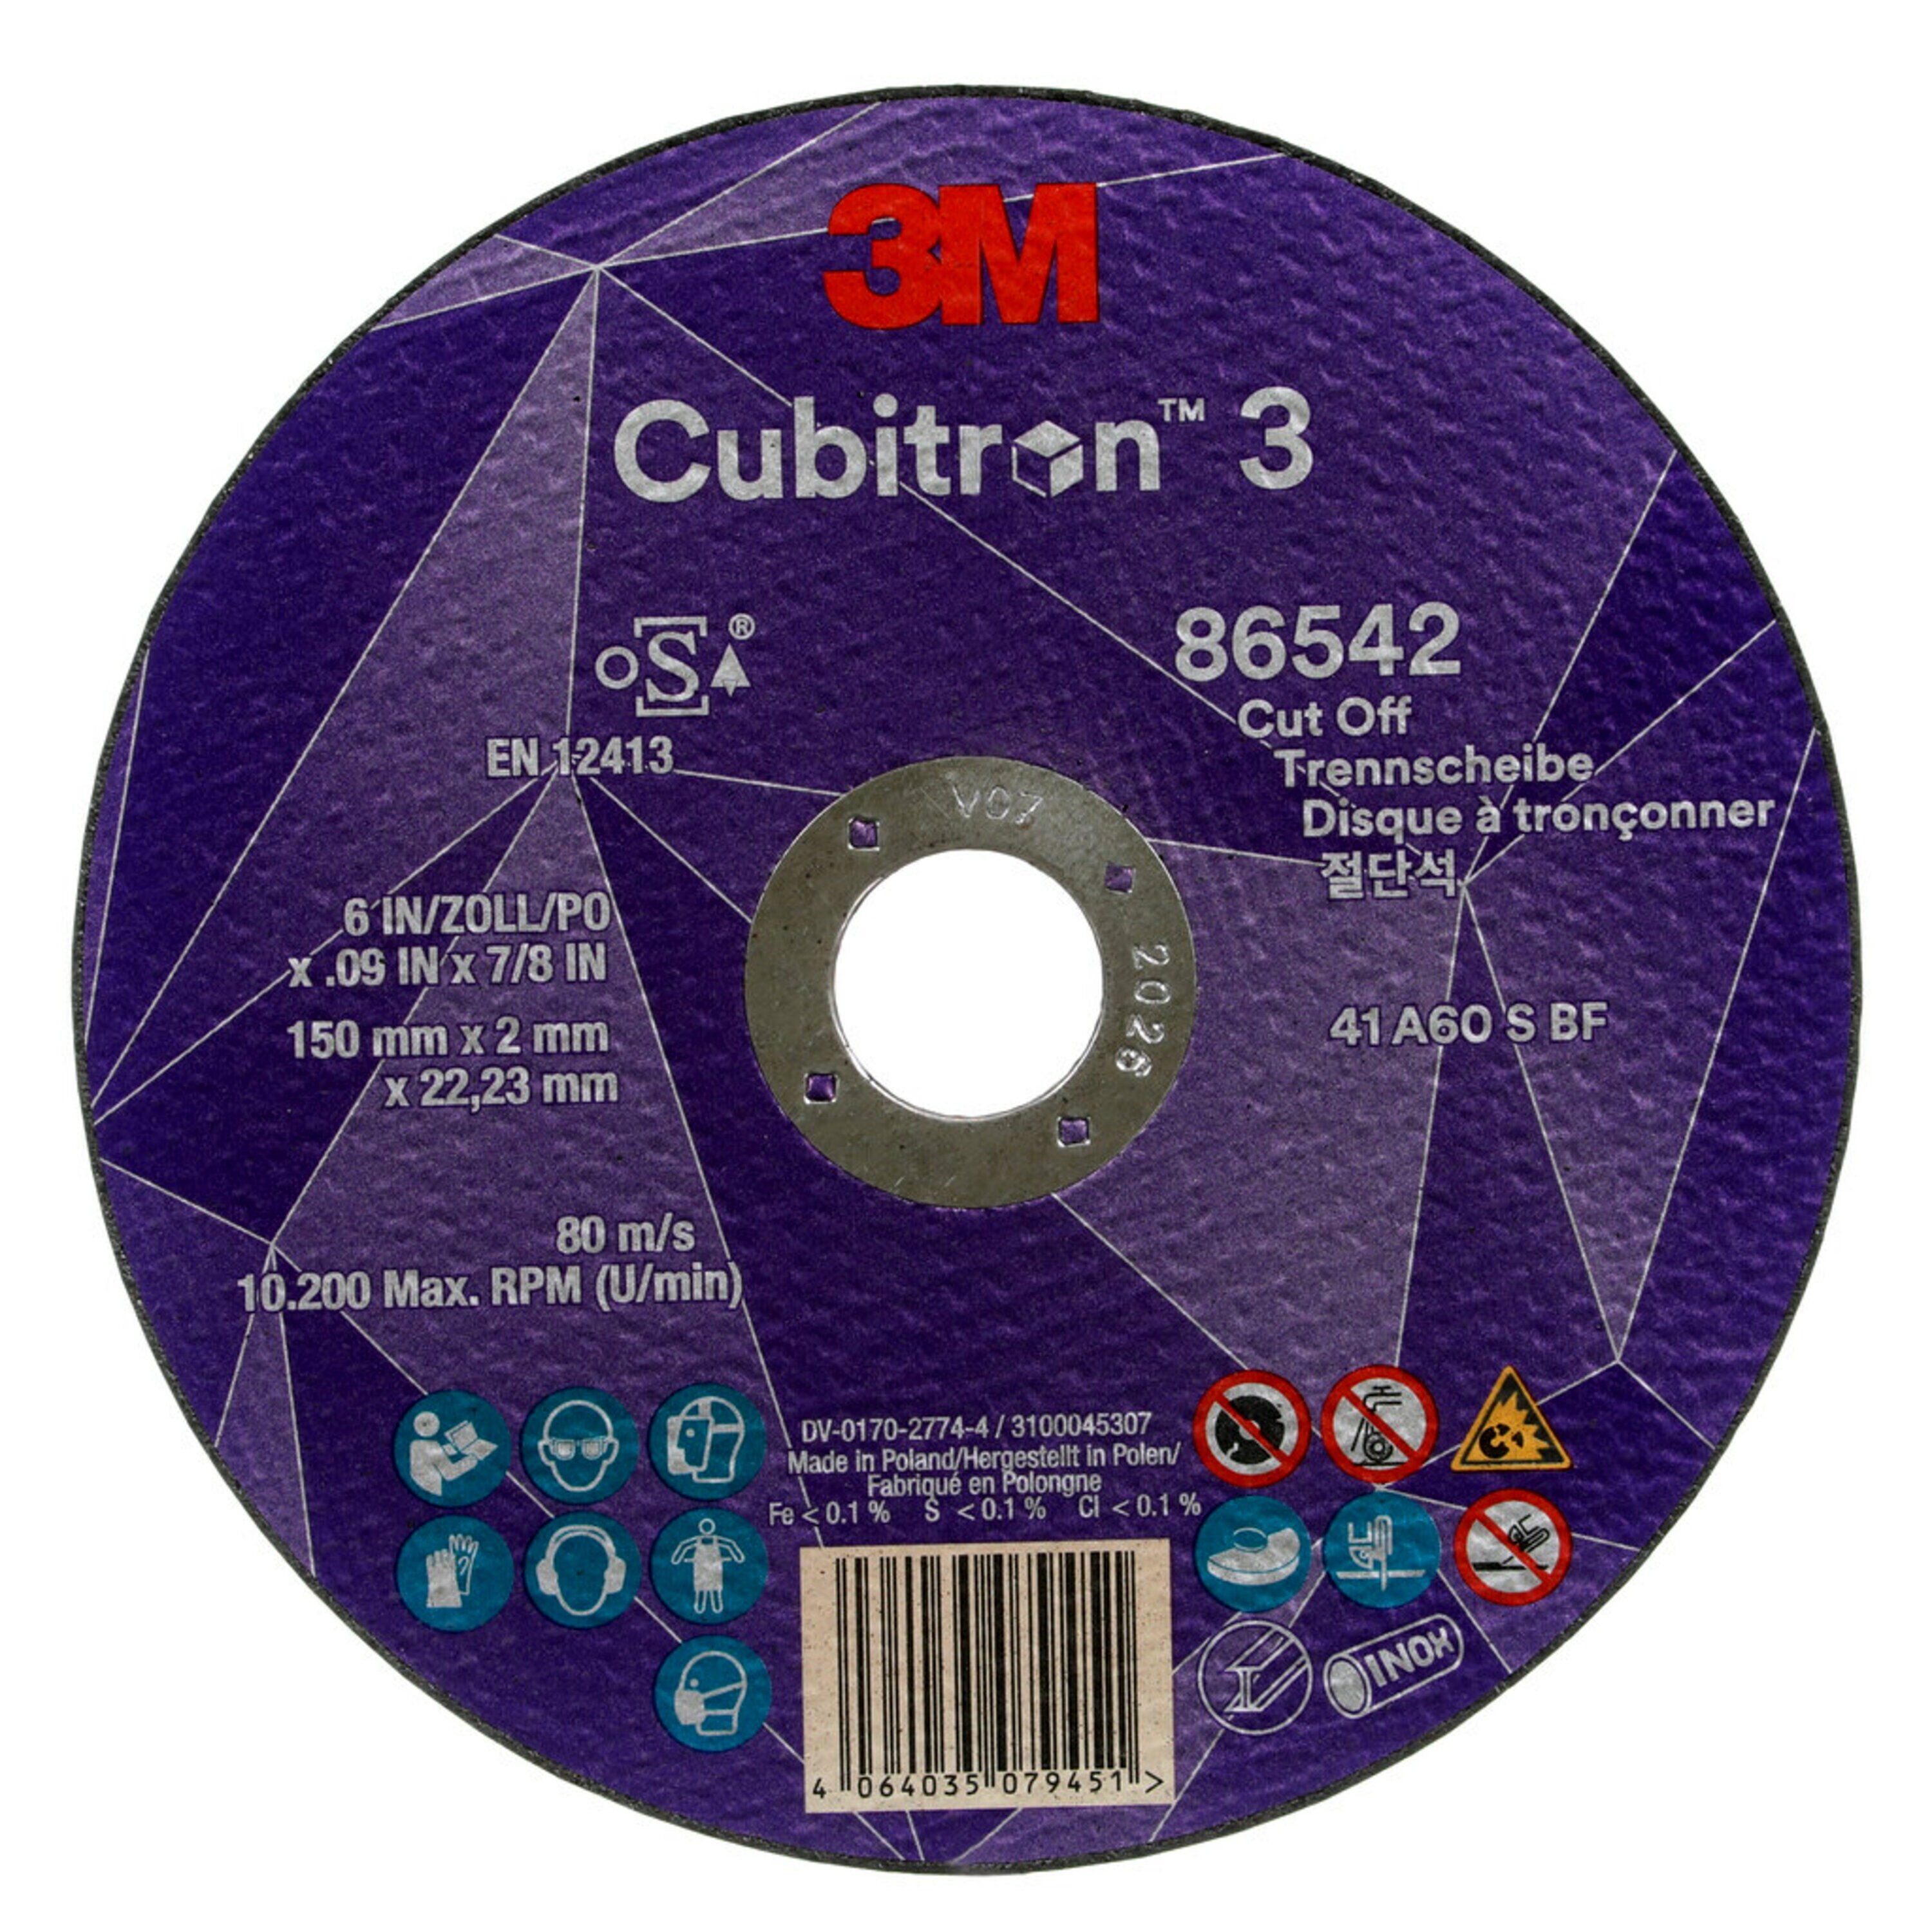 3M Cubitron 3 disco da taglio, 150 mm, 2 mm, 22,23 mm, 60 , tipo 41 #86542